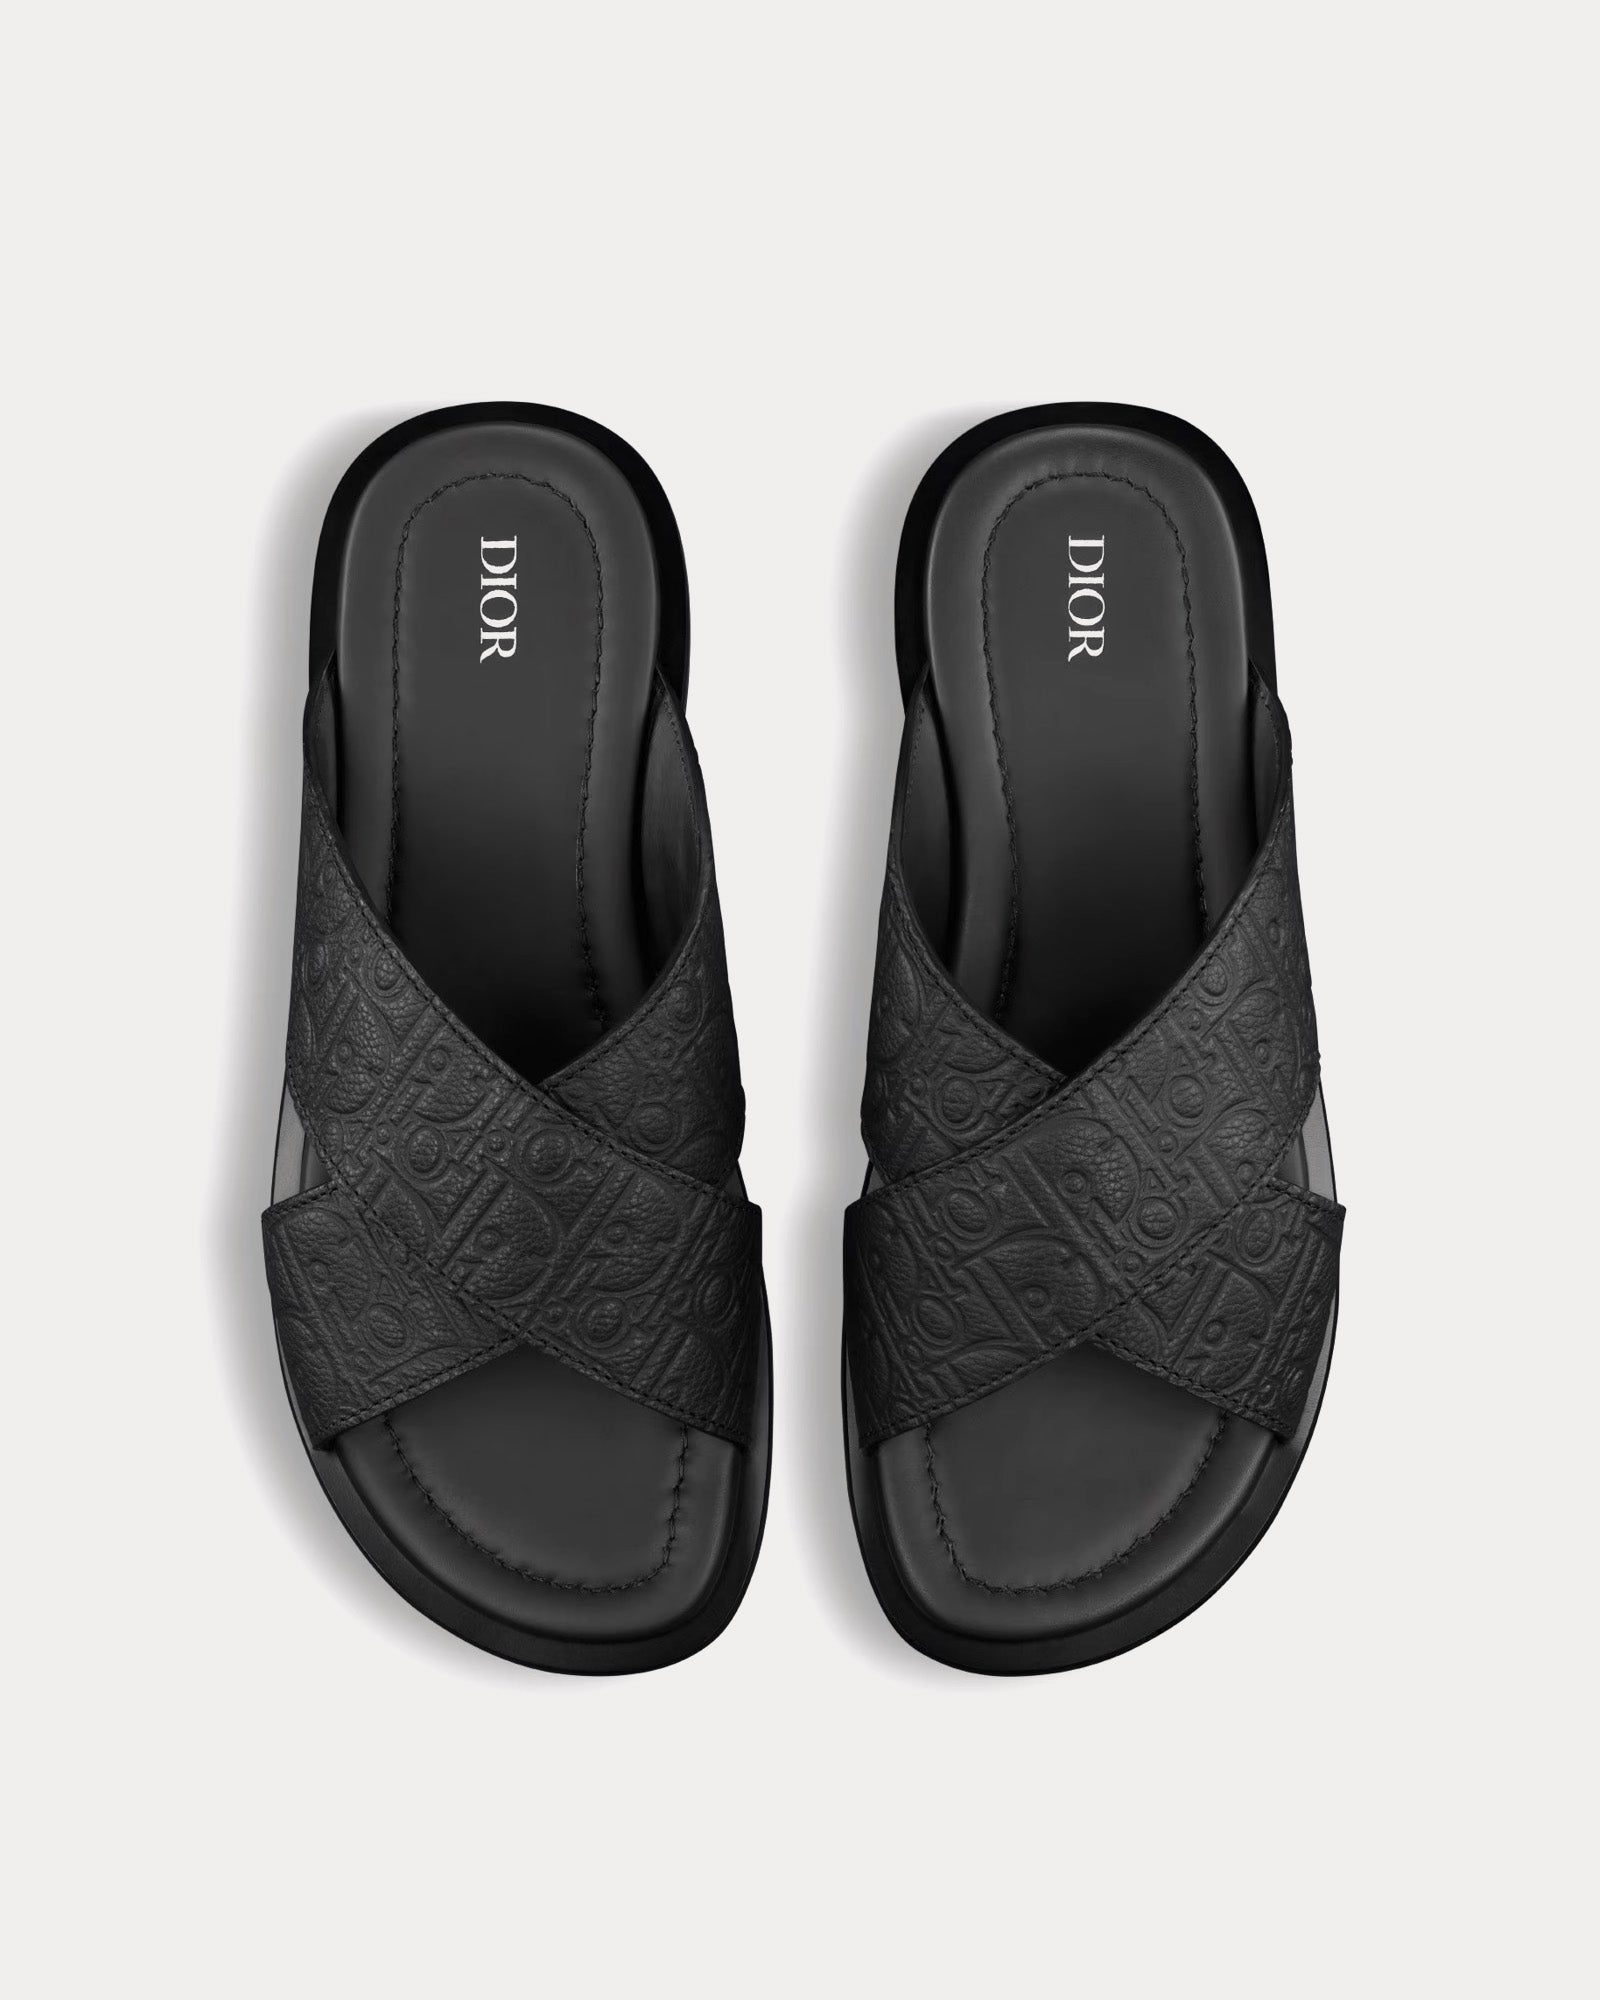 Dior - Alias Leather Black Sandals